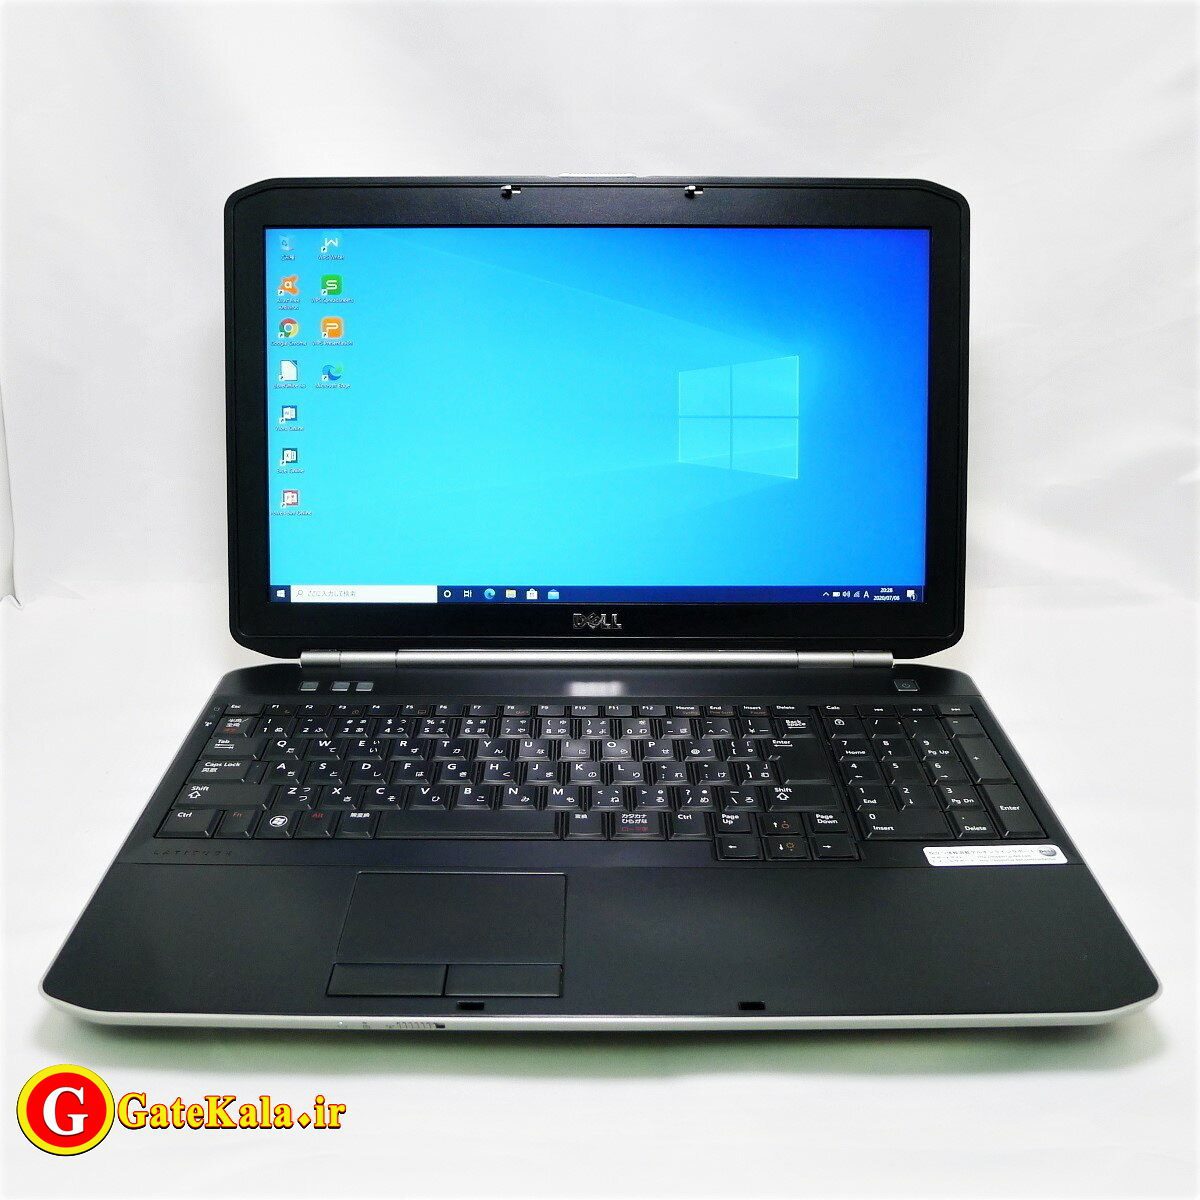 بررسی لپ تاپ Dell E5520